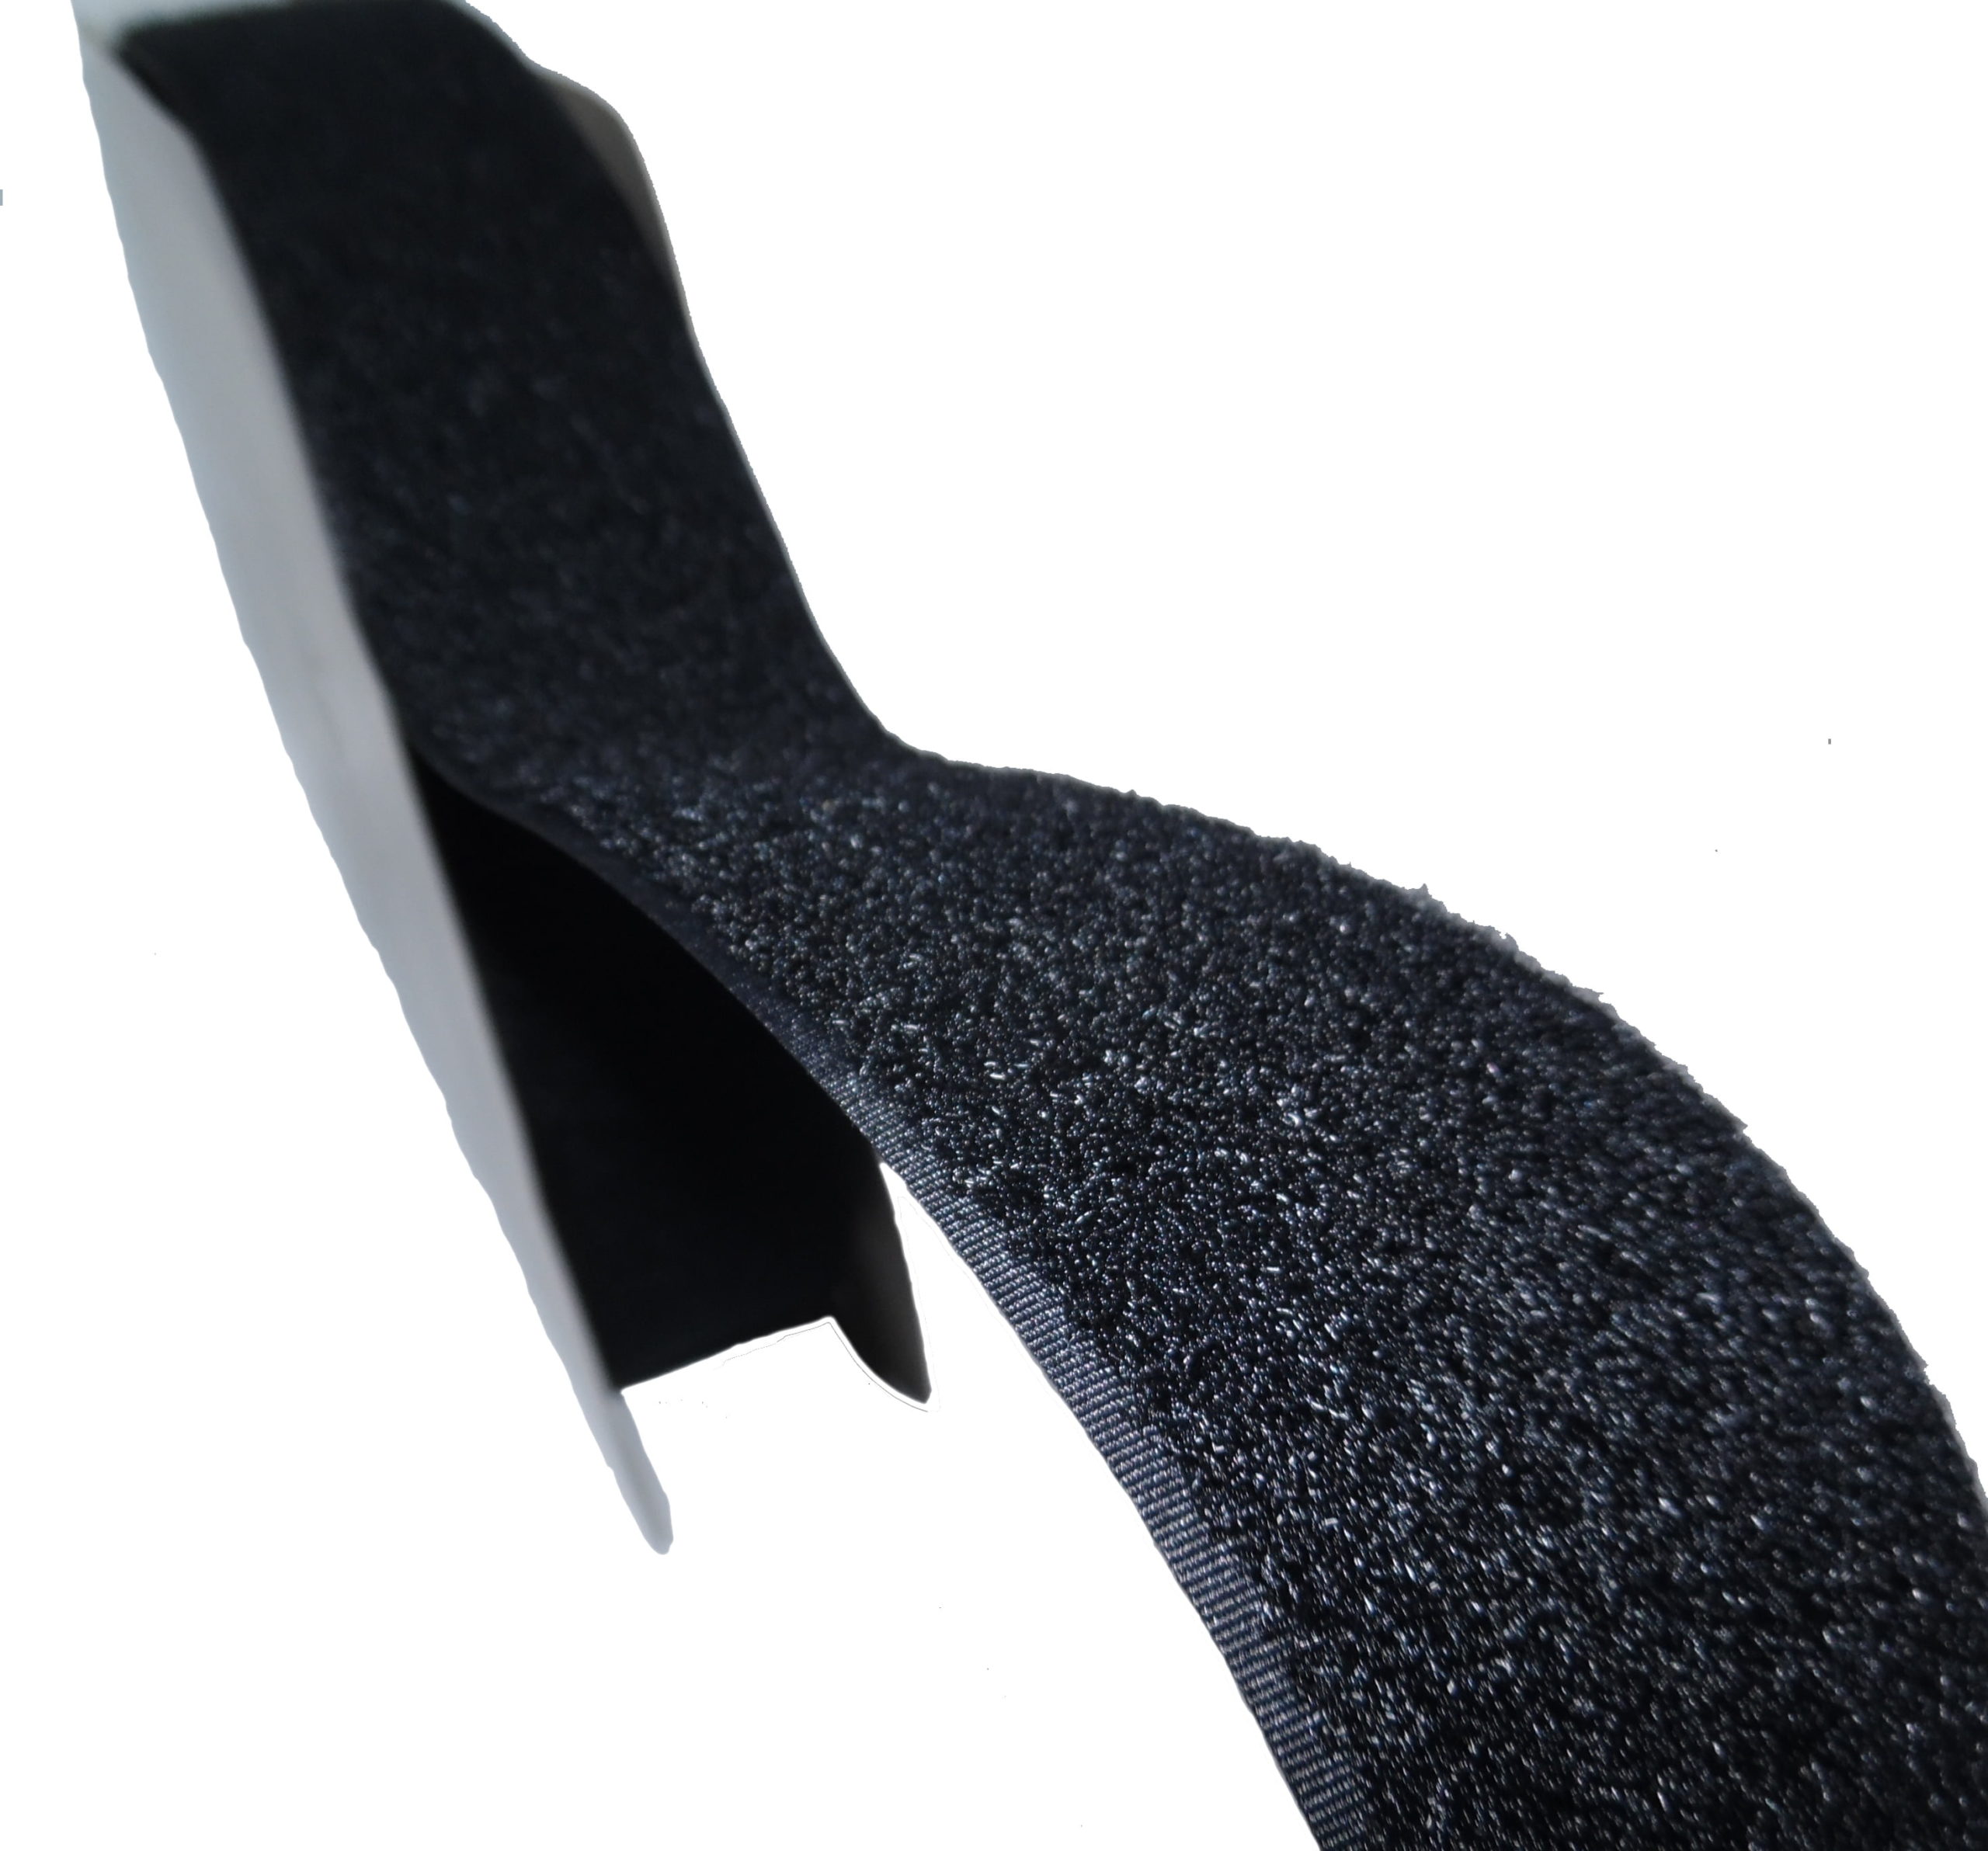 Bande Velcro Femelle à Coudre 2,5 cm x 50 cm